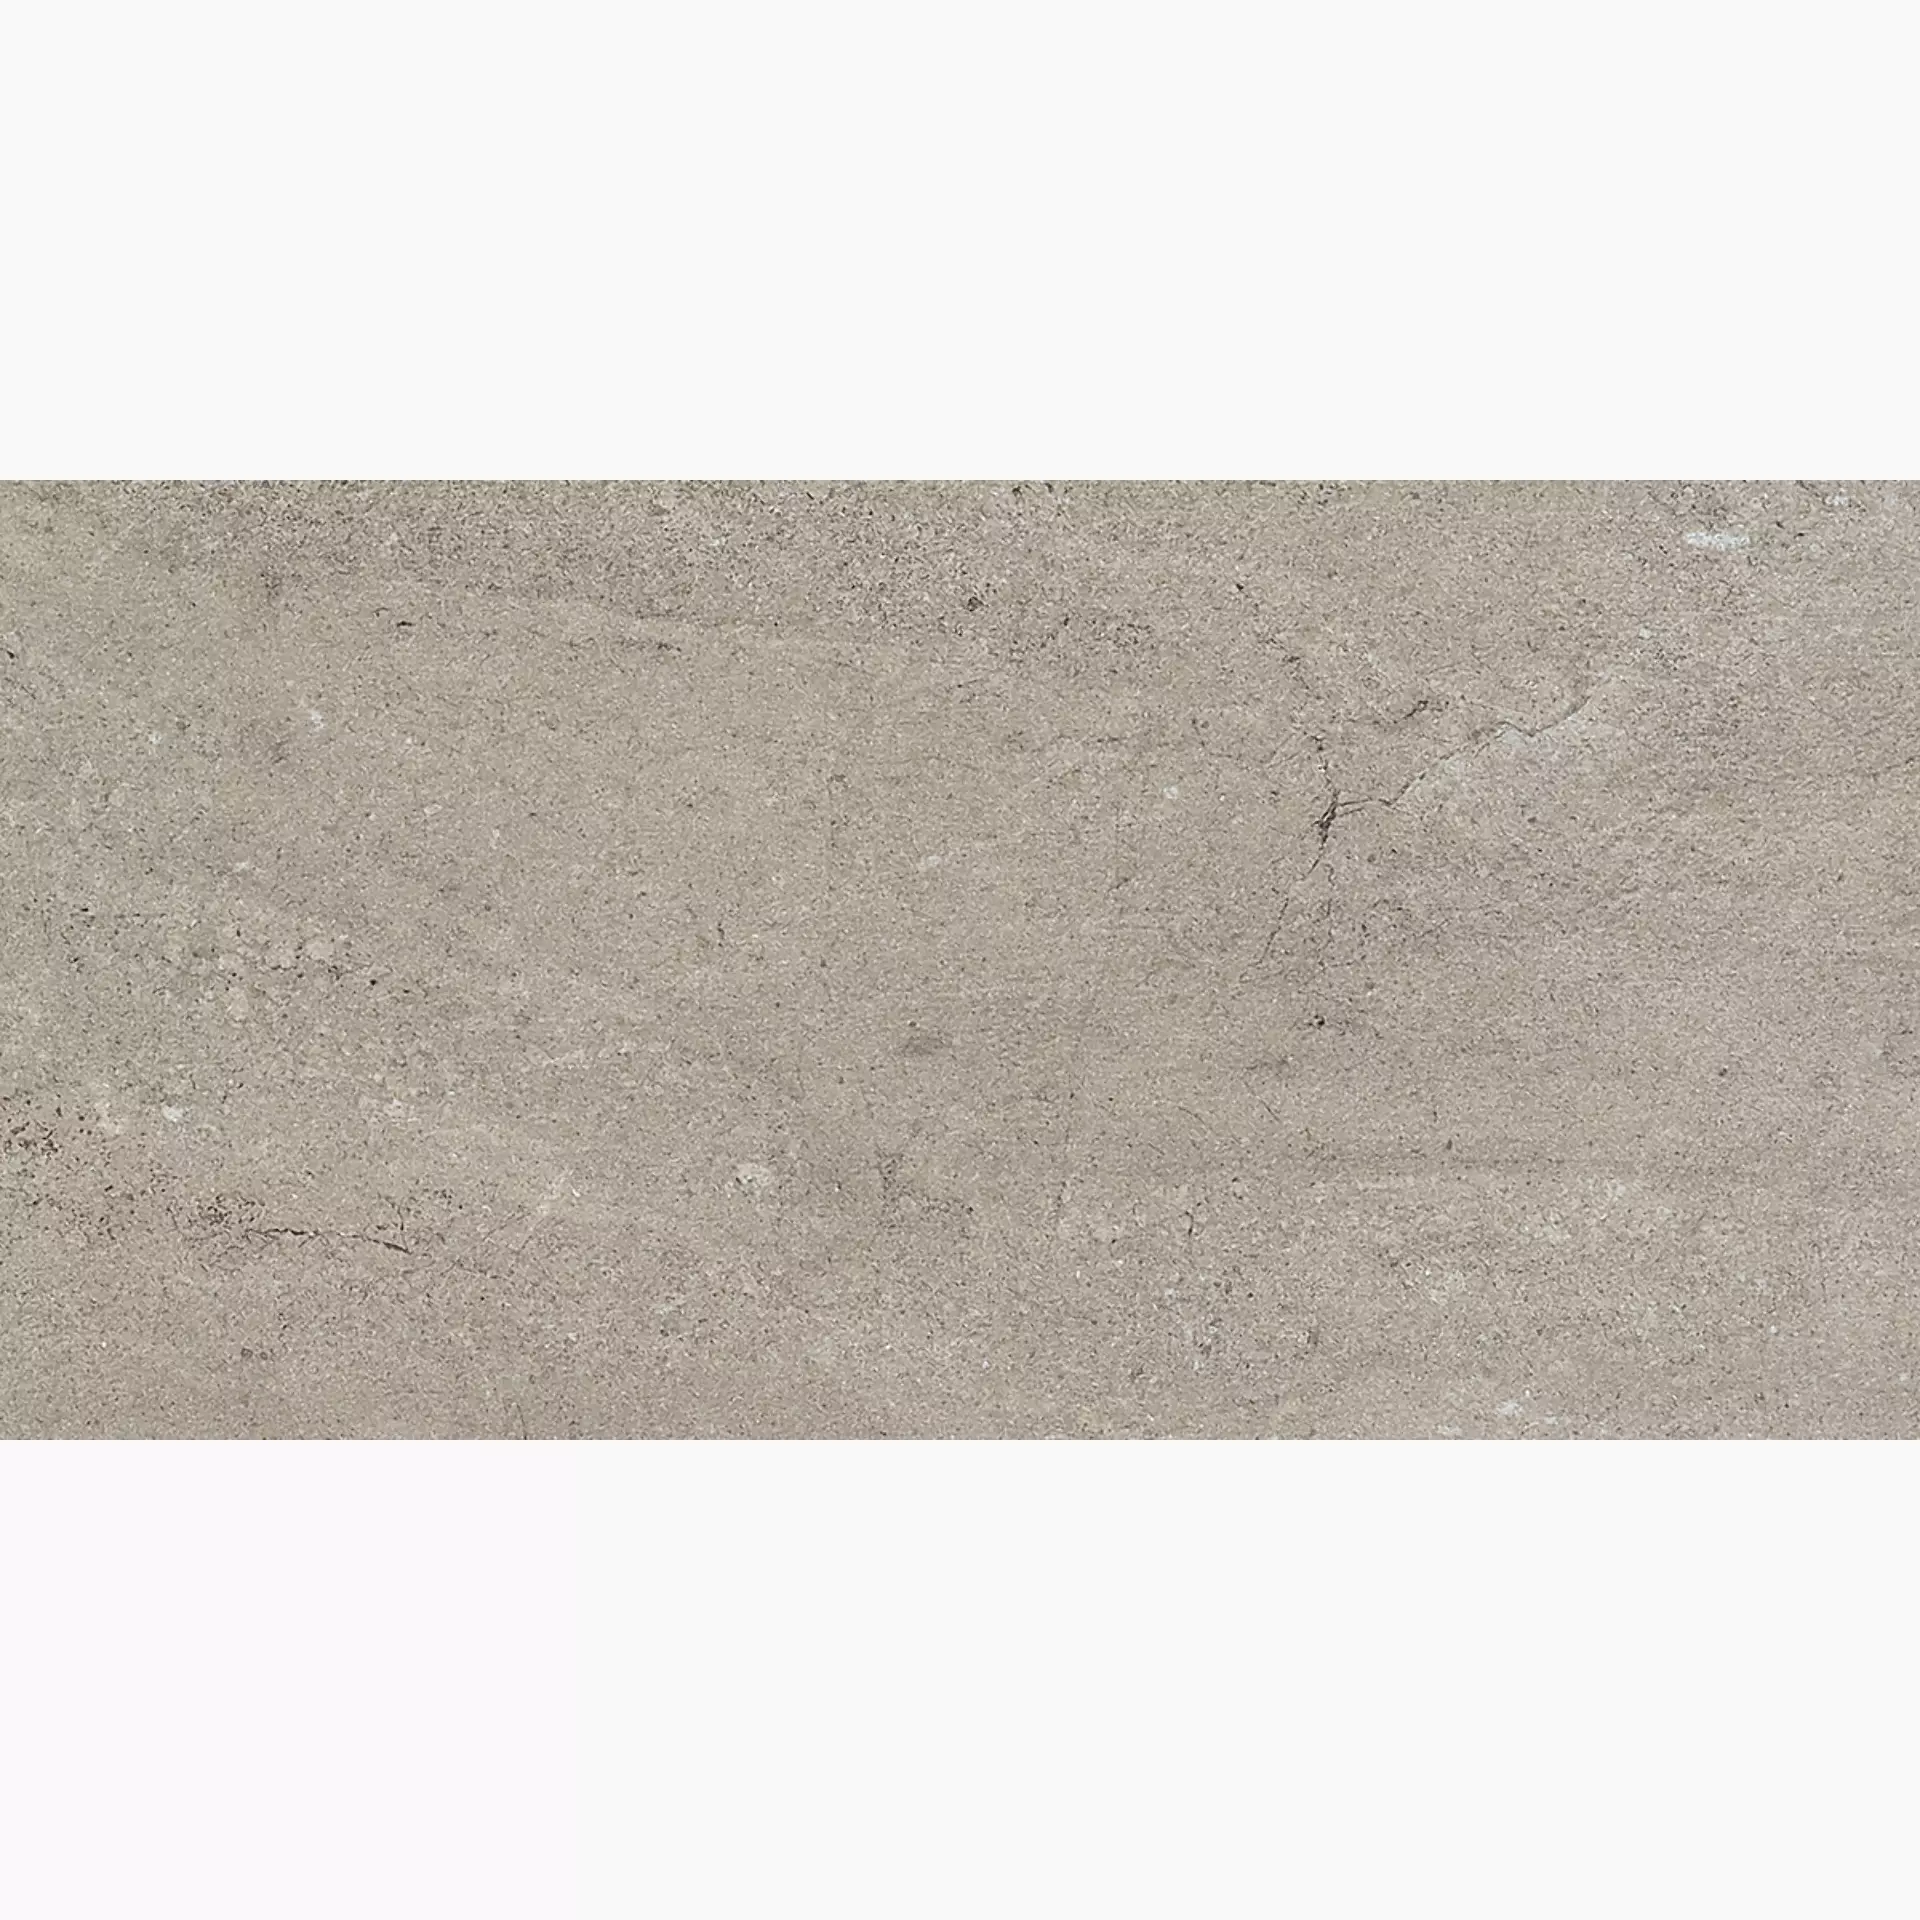 Gigacer Quarry Gravel Stone Bocciardato 12QUAGRASTBOC3060 30x60cm 12mm